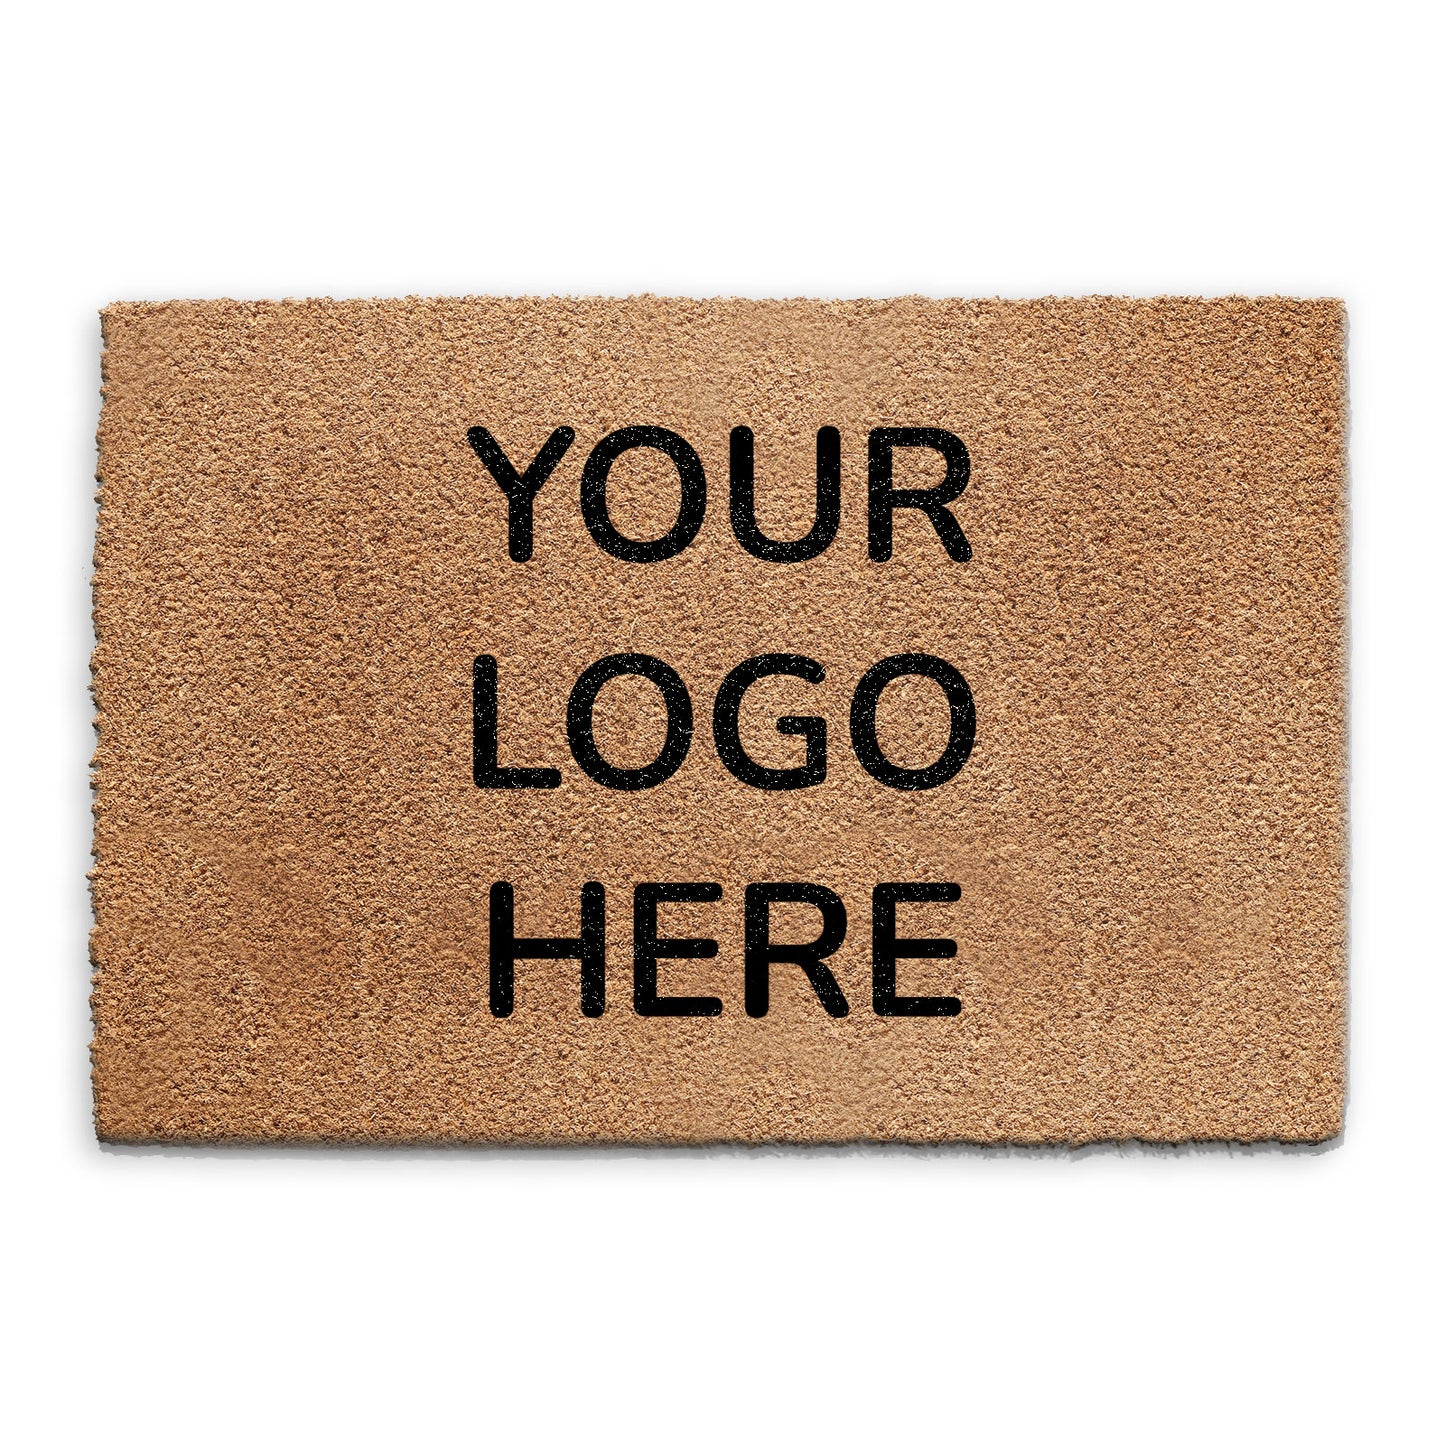 Personalised Coir Door Mat - Upload Your Logo